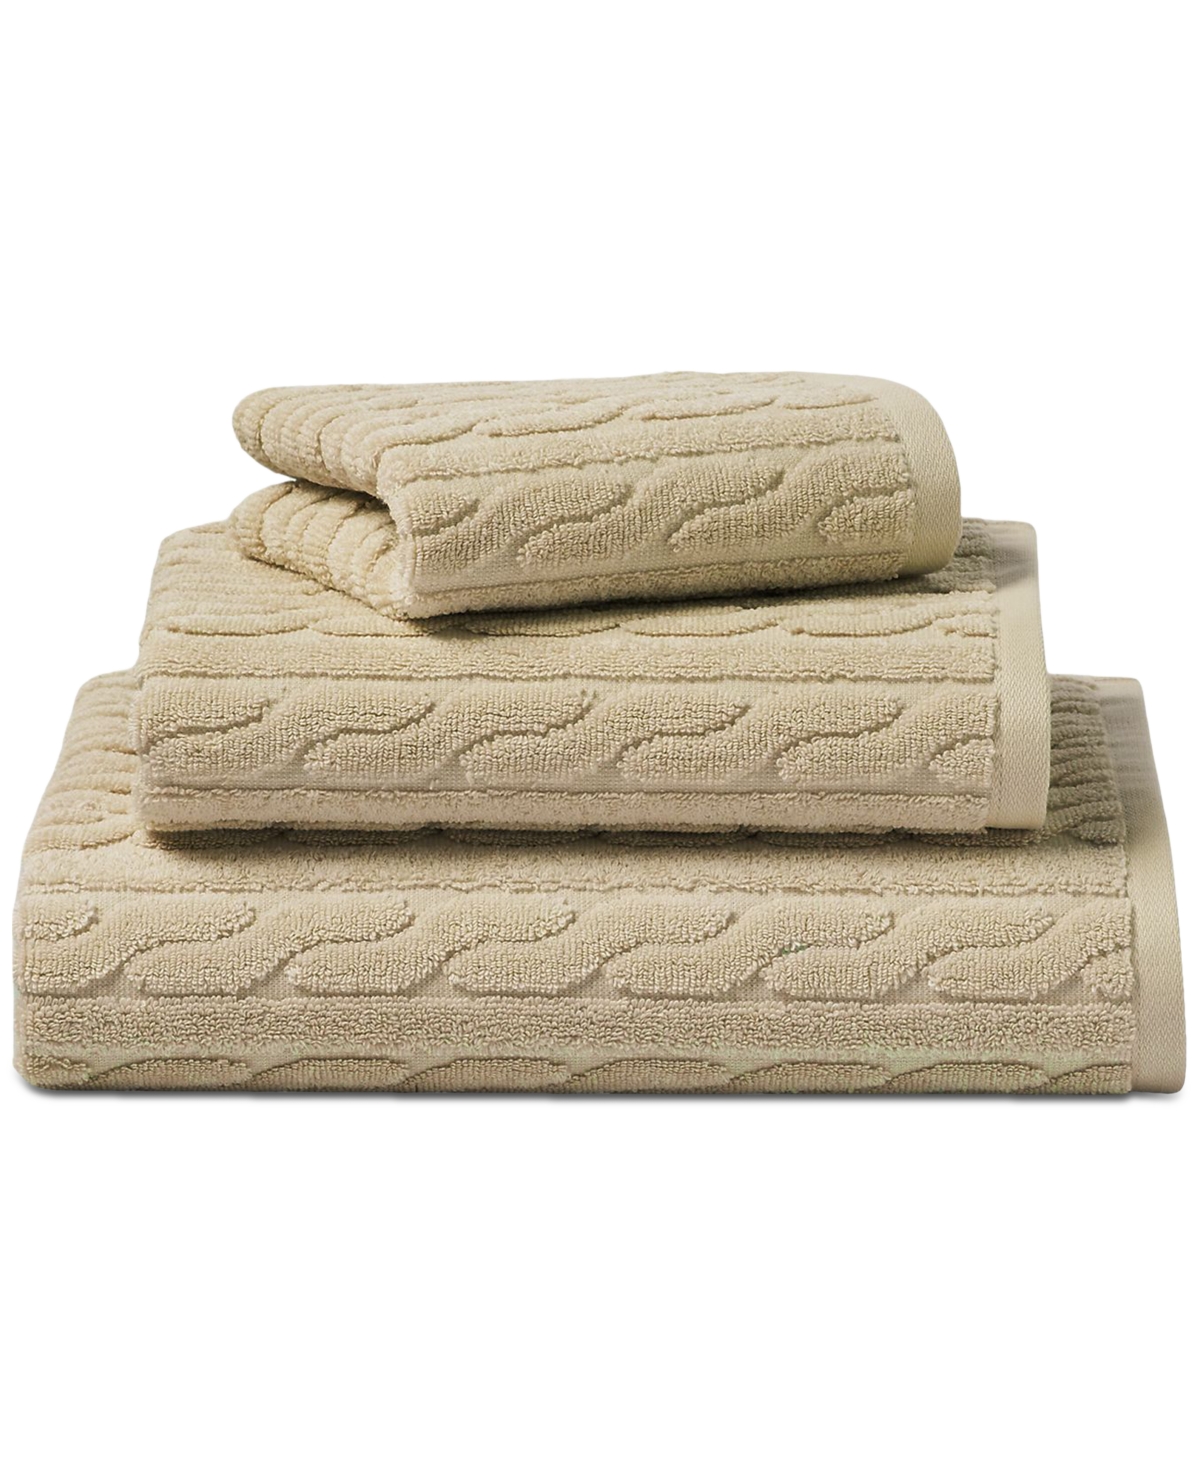 Lauren Ralph Lauren Sanders Cable Wash Towel Bedding In Solid Tan